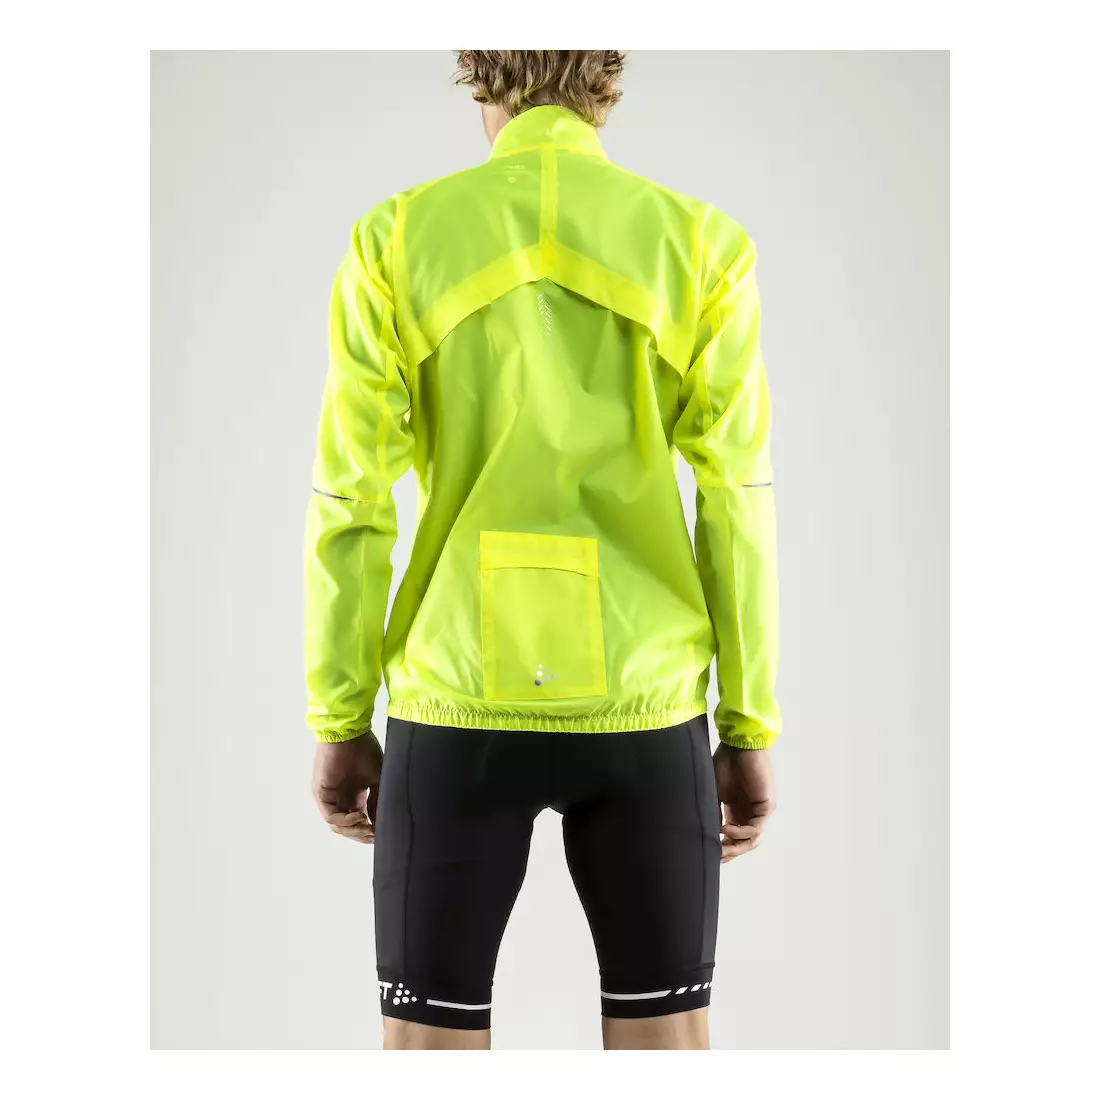 CRAFT Mist Wind JKT men's cycling jacket, windbreaker 1906093-851999, fluorine